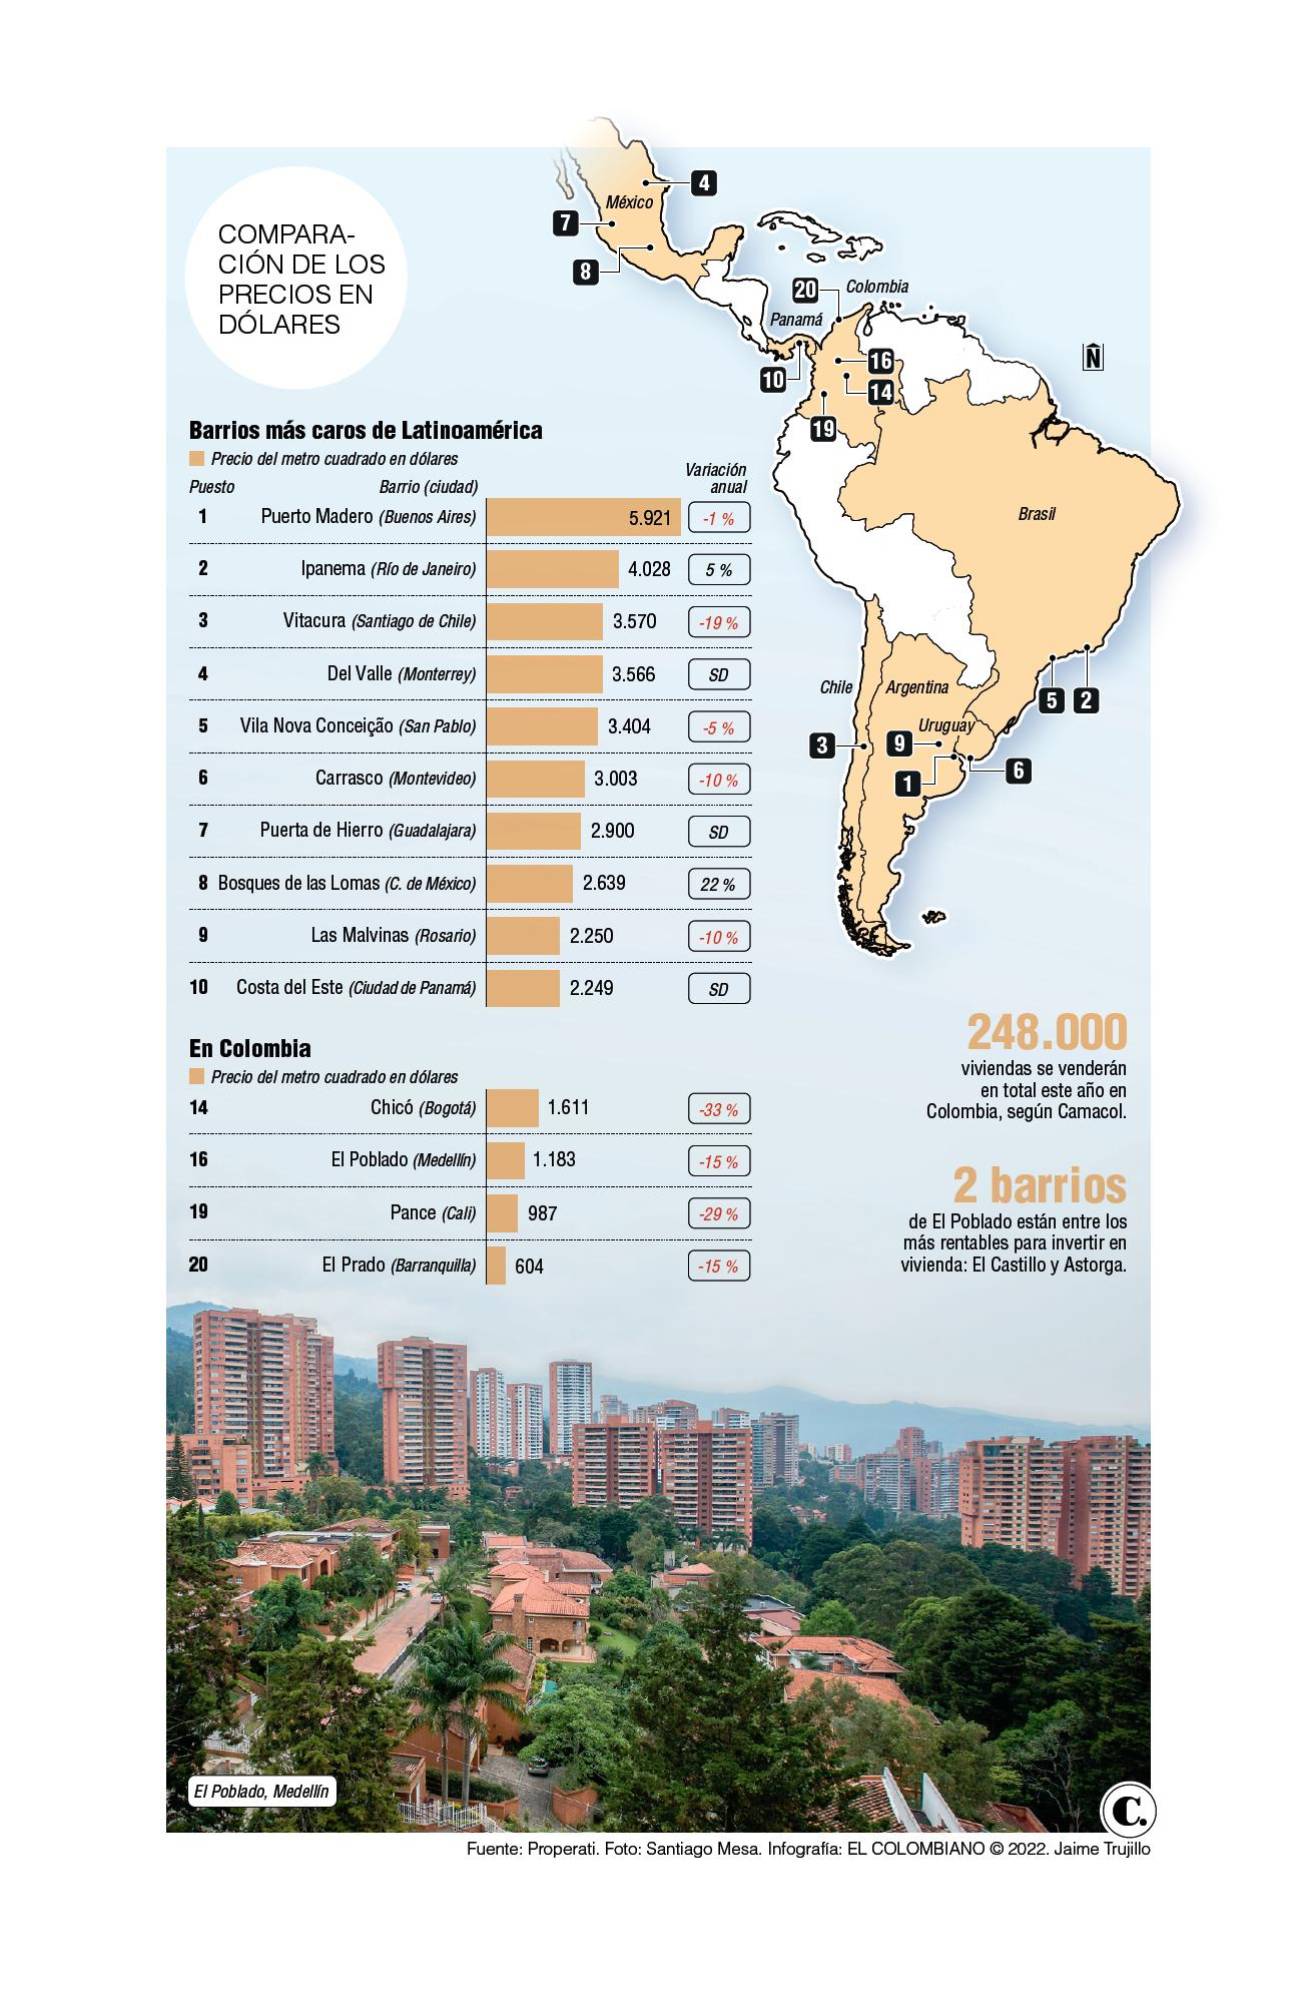 En Medellín está uno de los barrios más caros de Latinoamérica, ¿cuáles otros hay en Colombia?